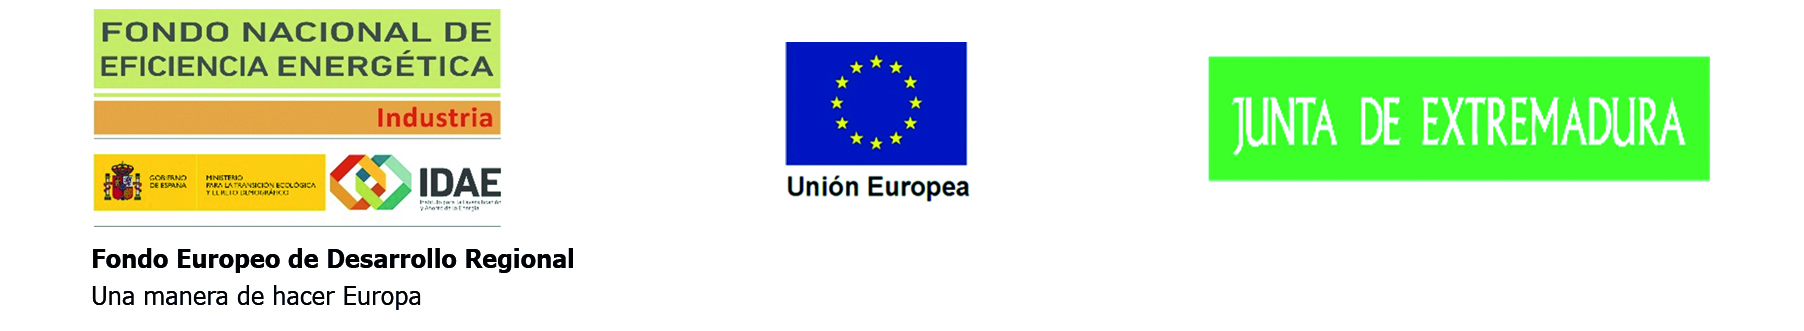 LOGO IDAE FONDO NACIONAL DE EFICIENCIA ENERGETICA - UNION EUROPEA - JUNTA DE EXTREMADURA